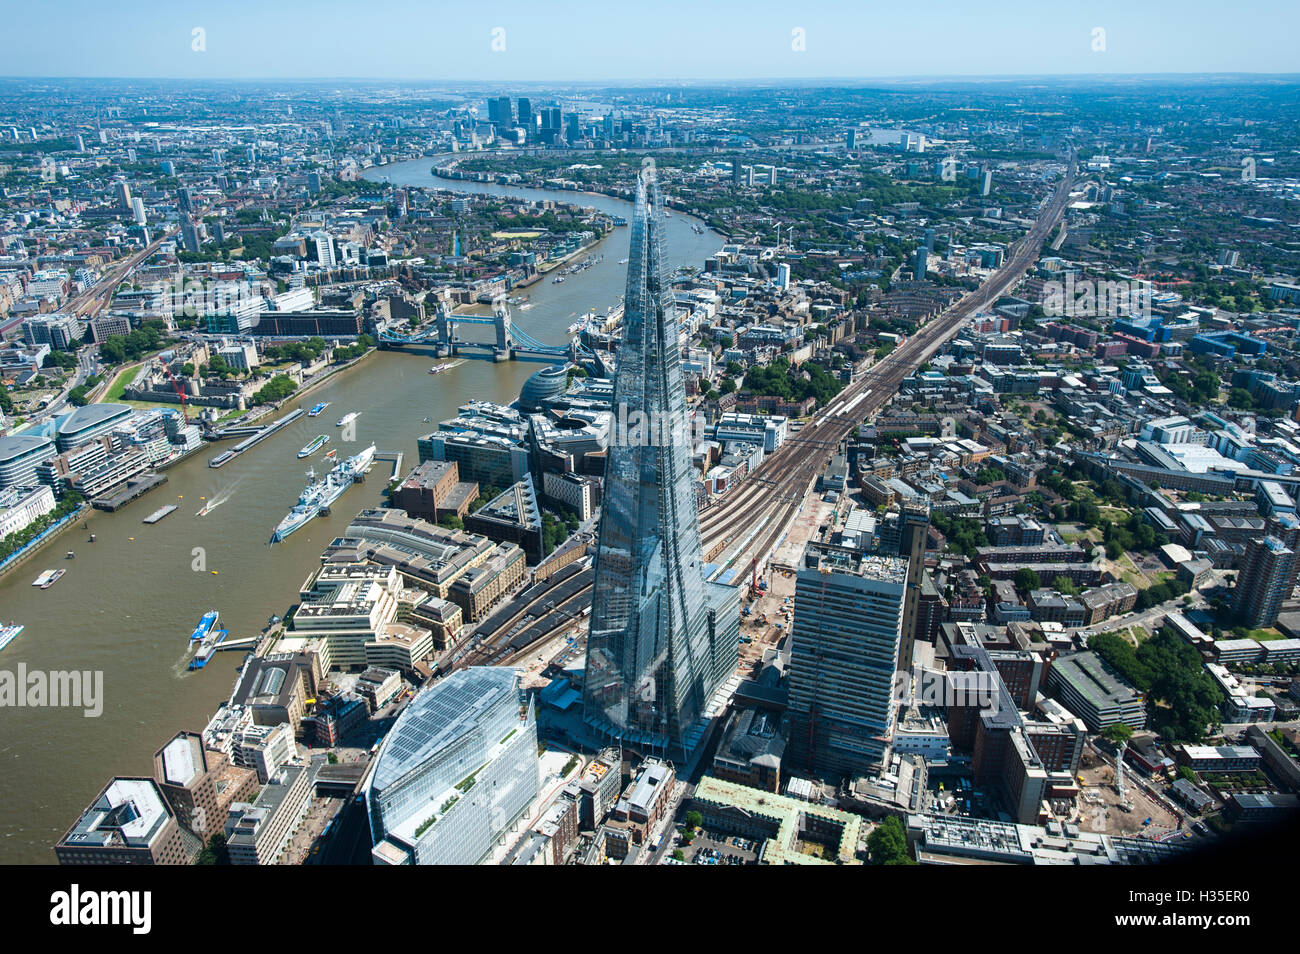 Eine Luftaufnahme von The Shard, stehend mit 309,6 Metern Höhe, das höchste Gebäude in Europa, London, England, UK Stockfoto